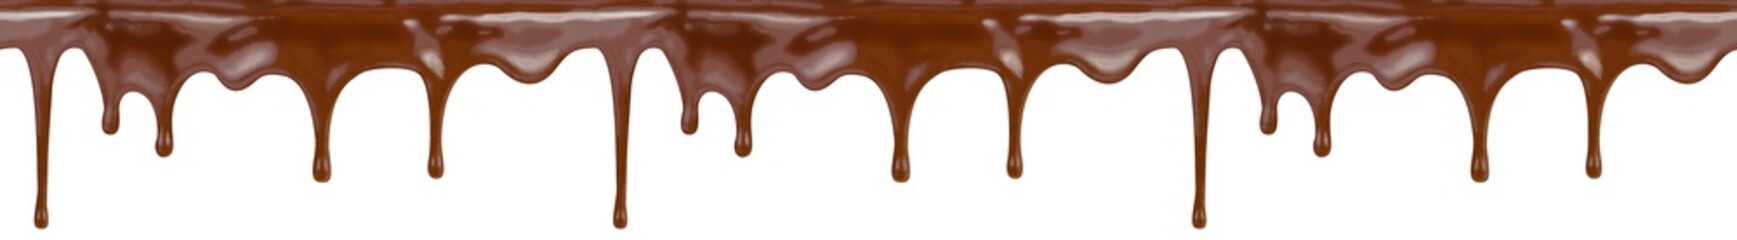 Schokolade nahtlose Muster isoliert mit Beschneidungspfad enthalten